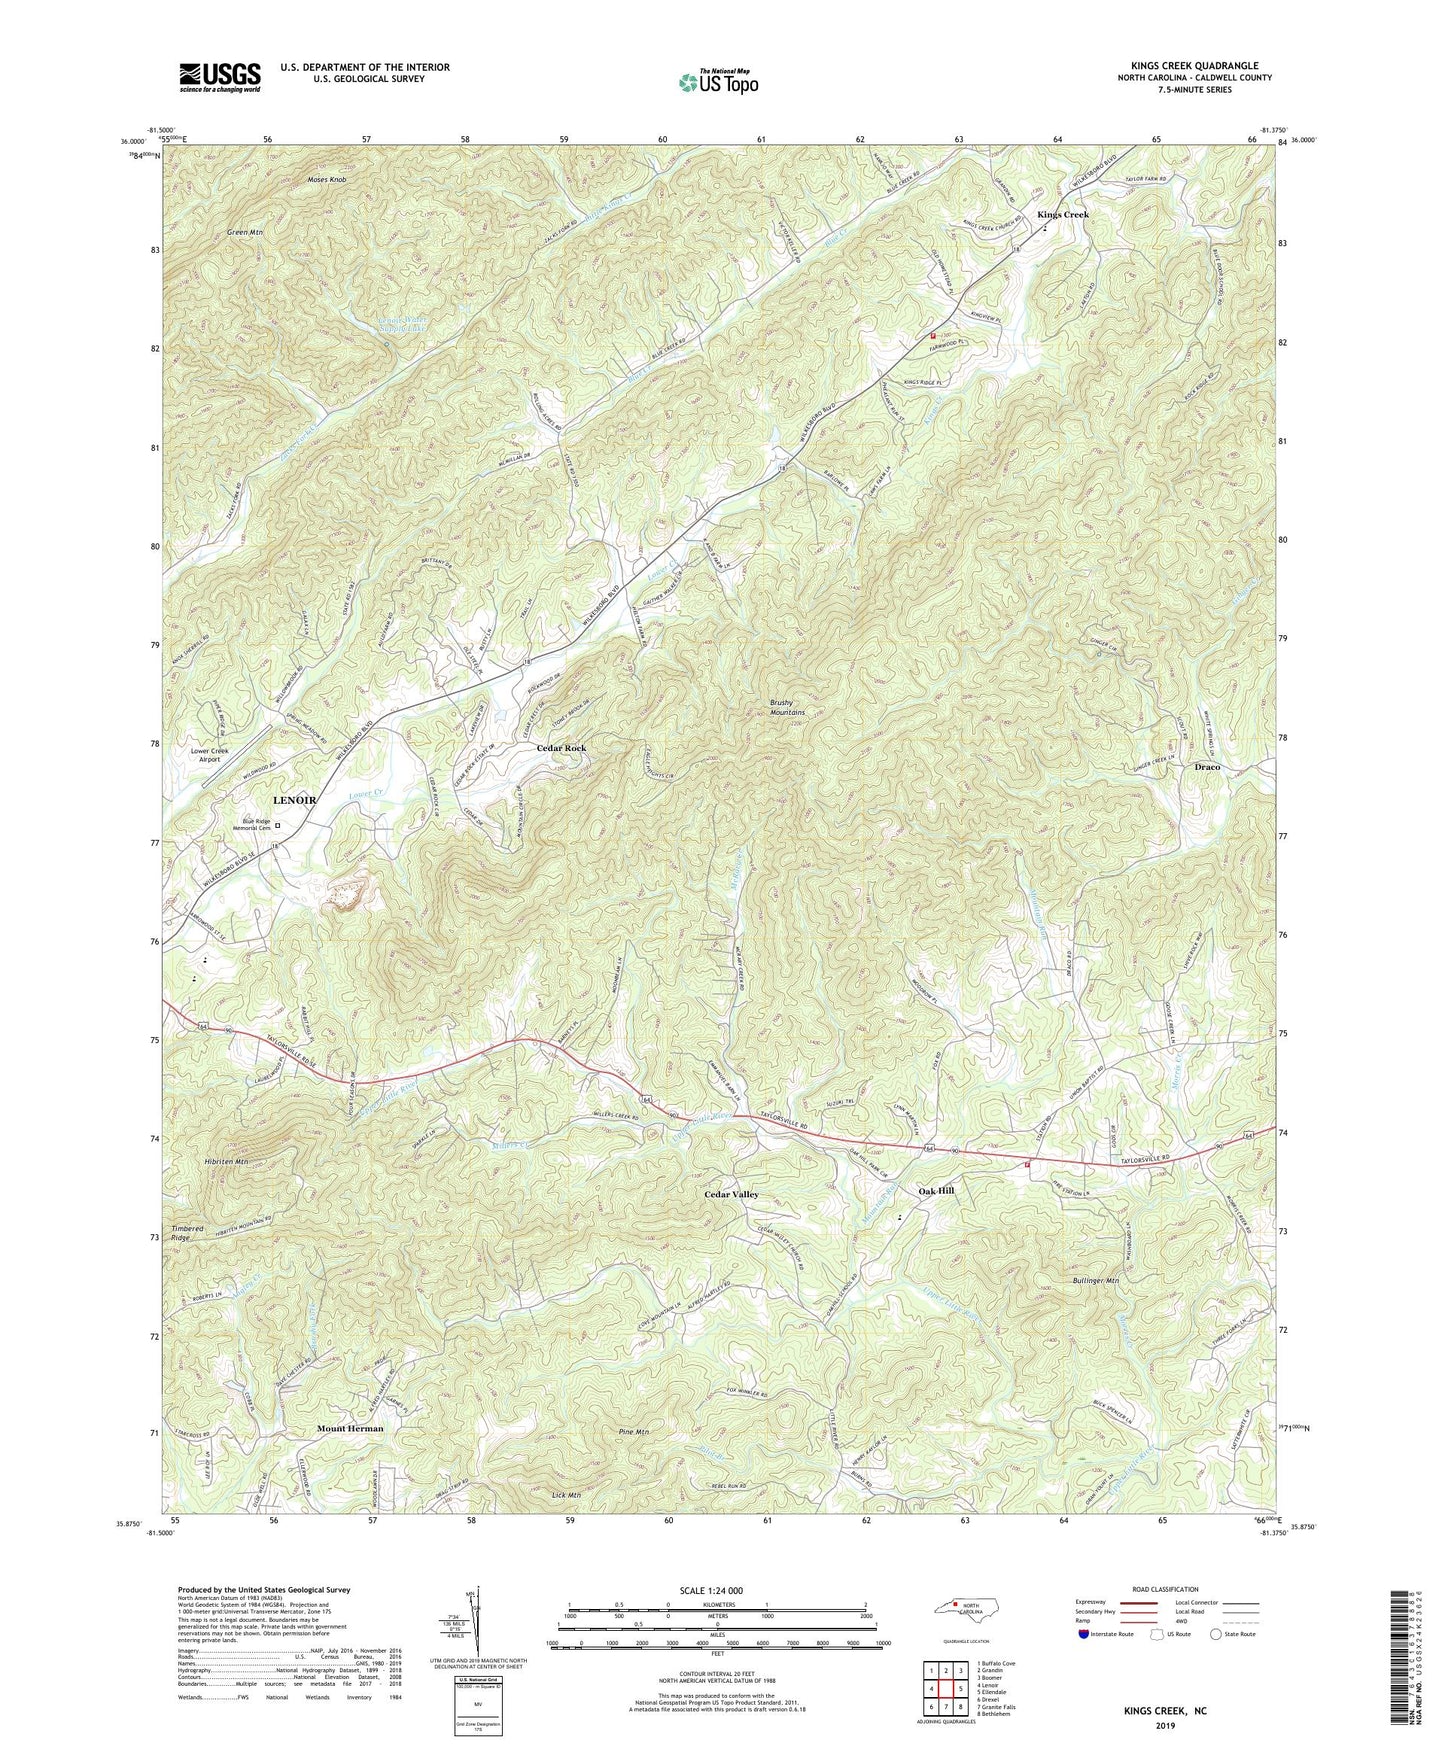 Kings Creek North Carolina US Topo Map Image